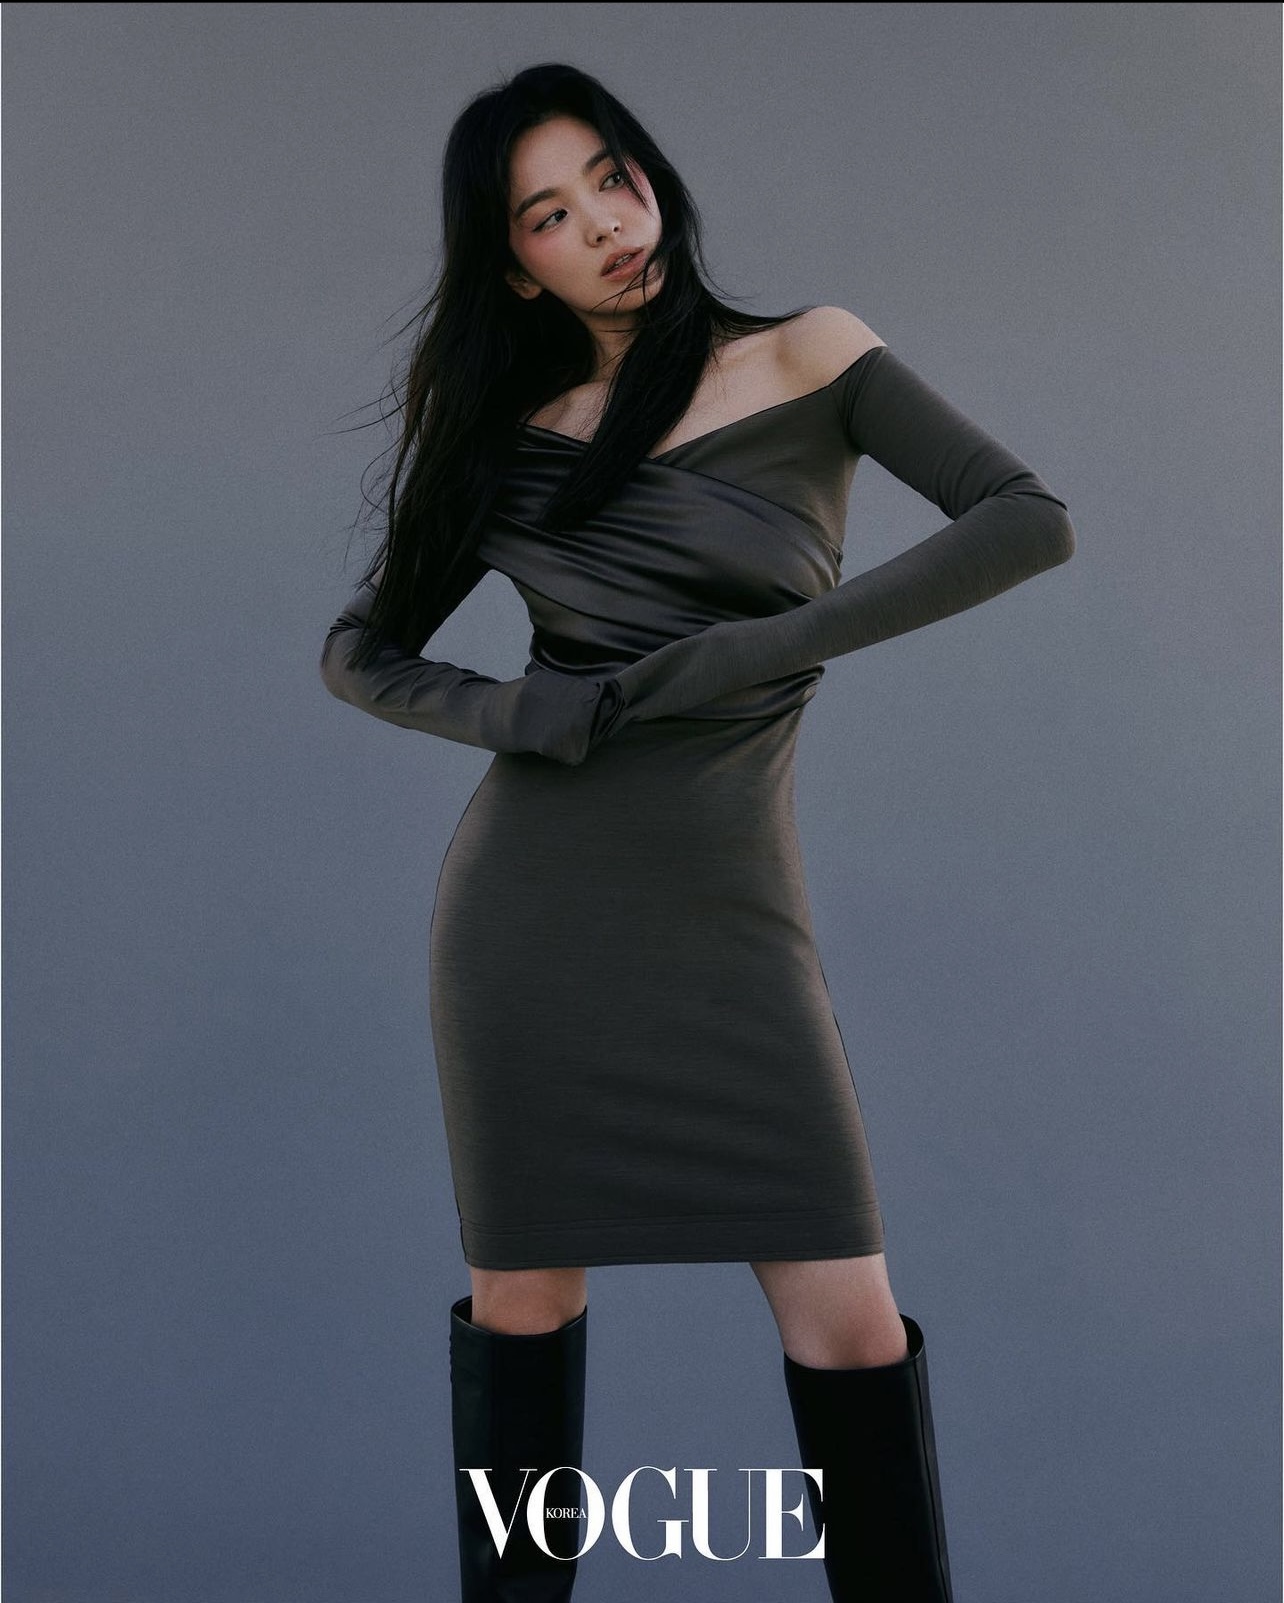 7749 outfit đẳng cấp chứng minh Song Hye Kyo là đại sứ hoàn hảo của Fendi - Ảnh 16.